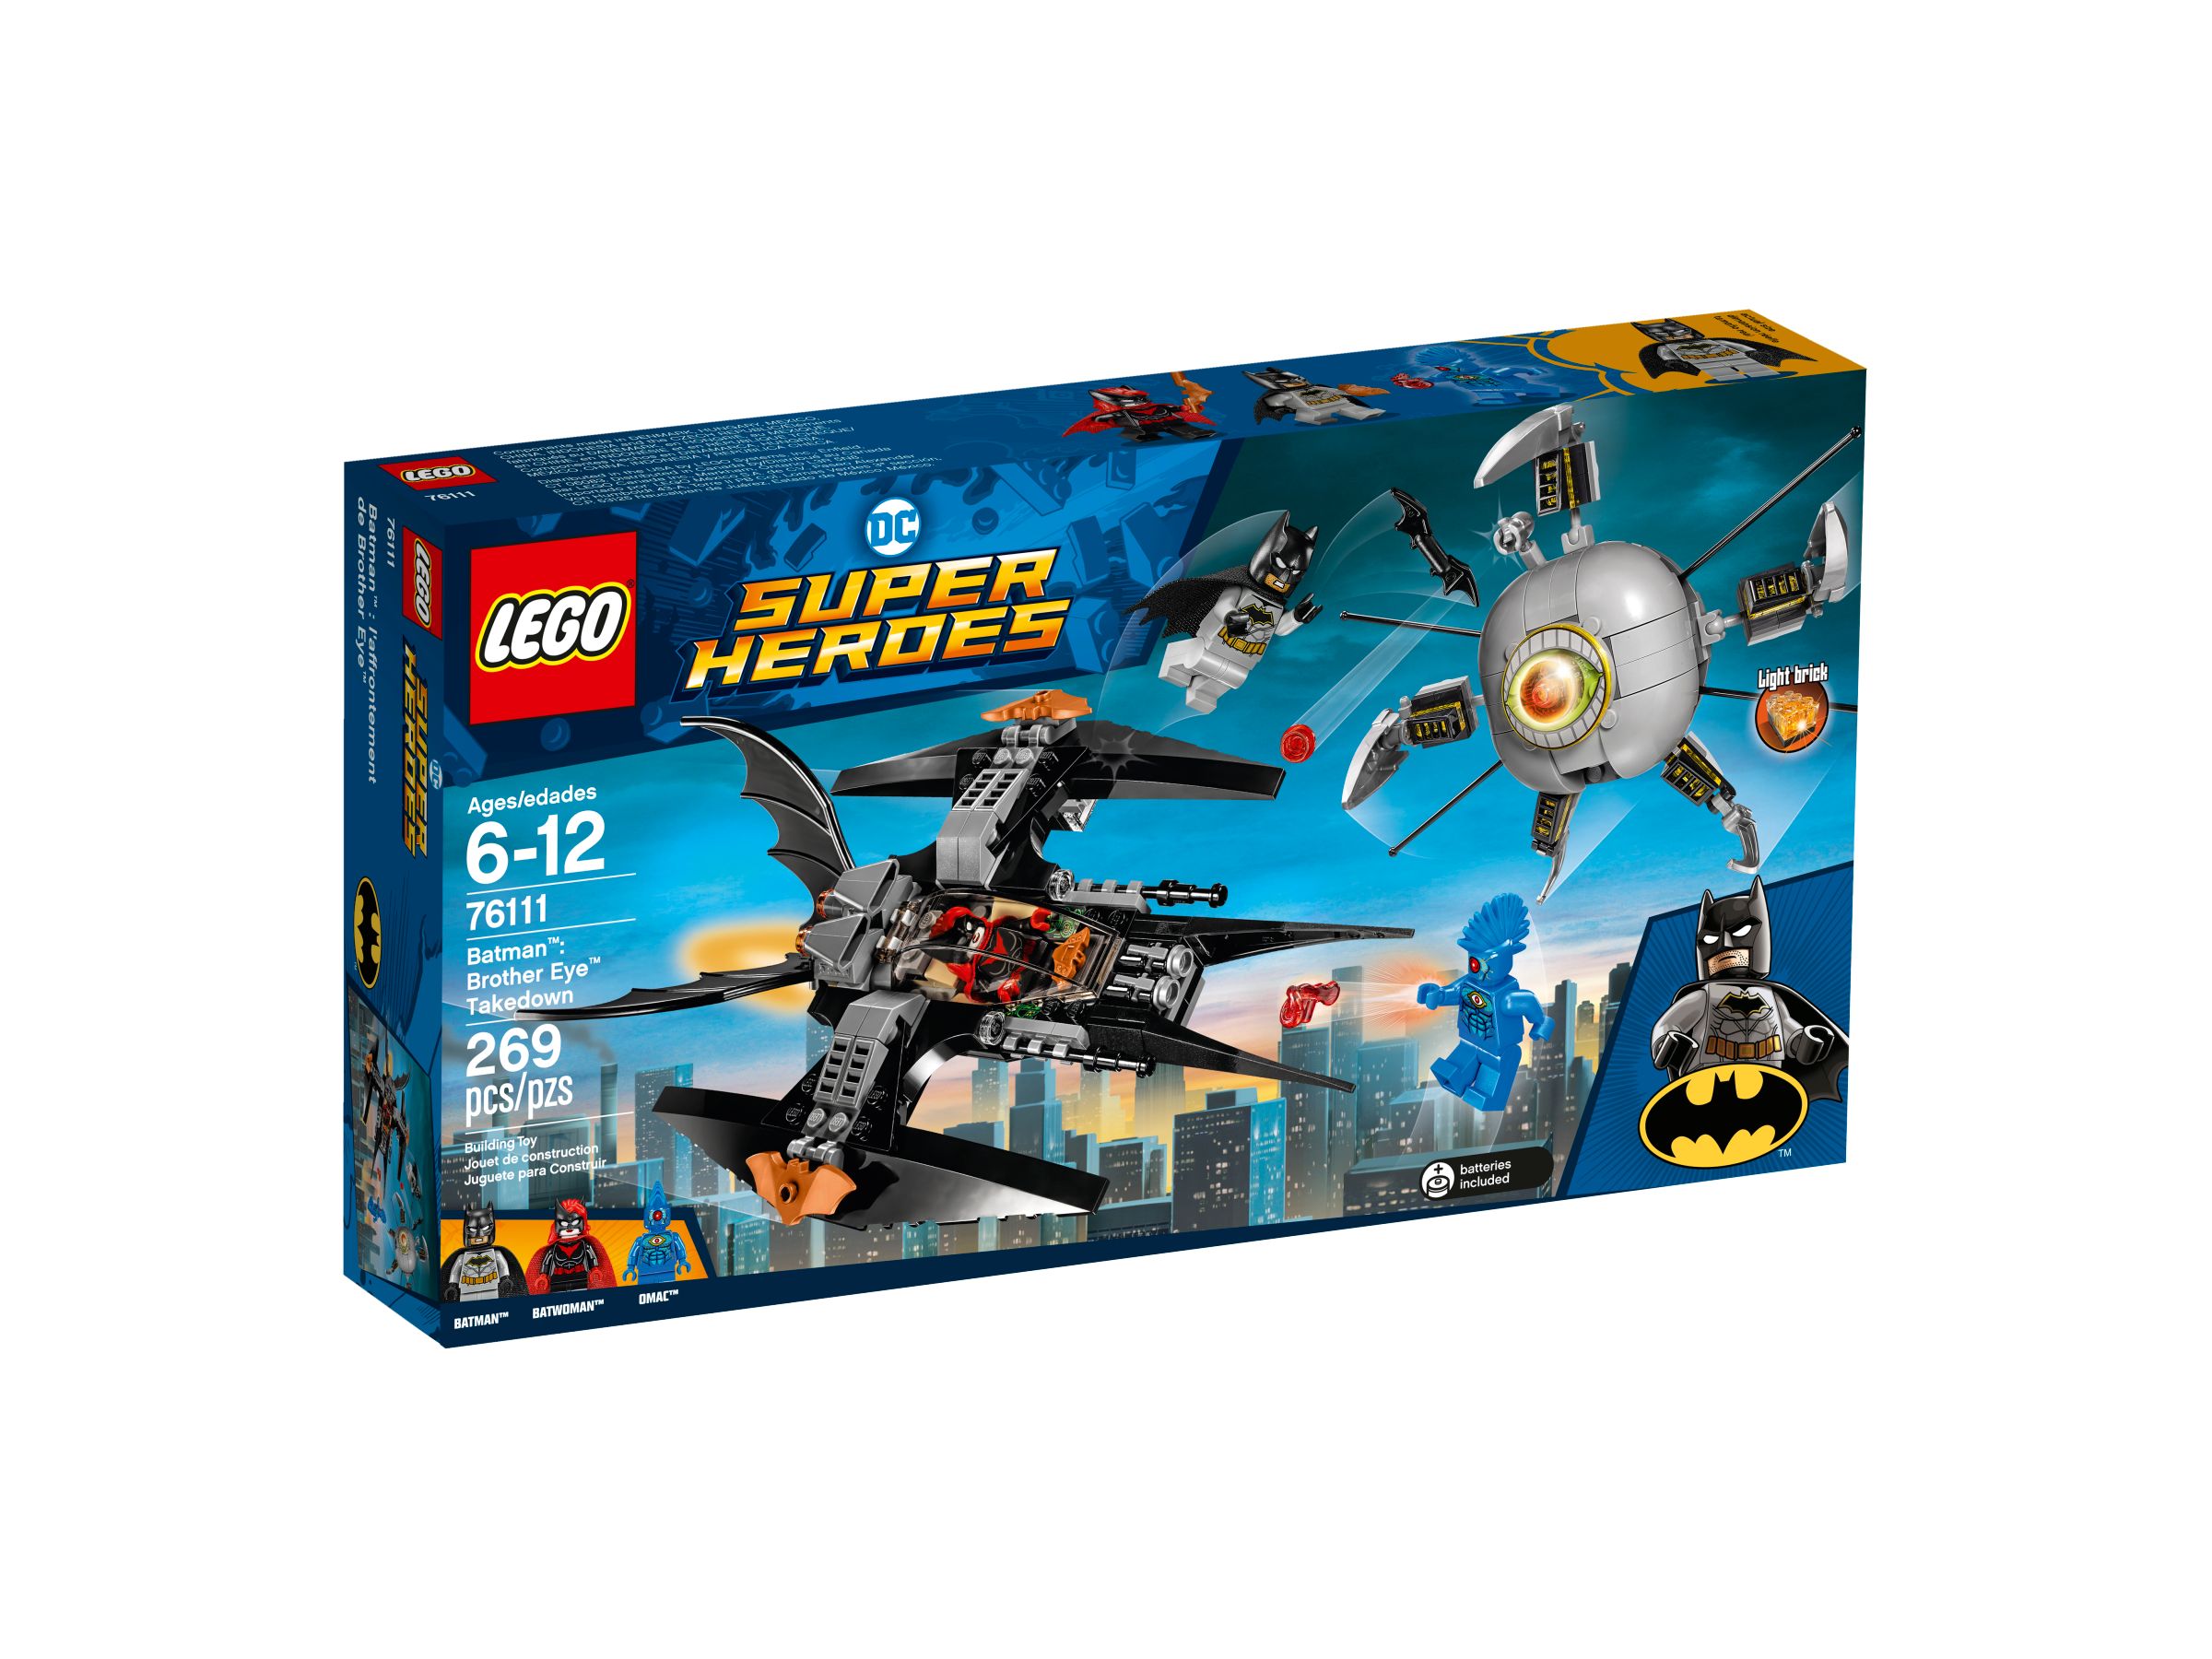 LEGO Super Heroes 76111 Batman™: Brother Eye™ Gefangennahme LEGO_76111_alt1.jpg